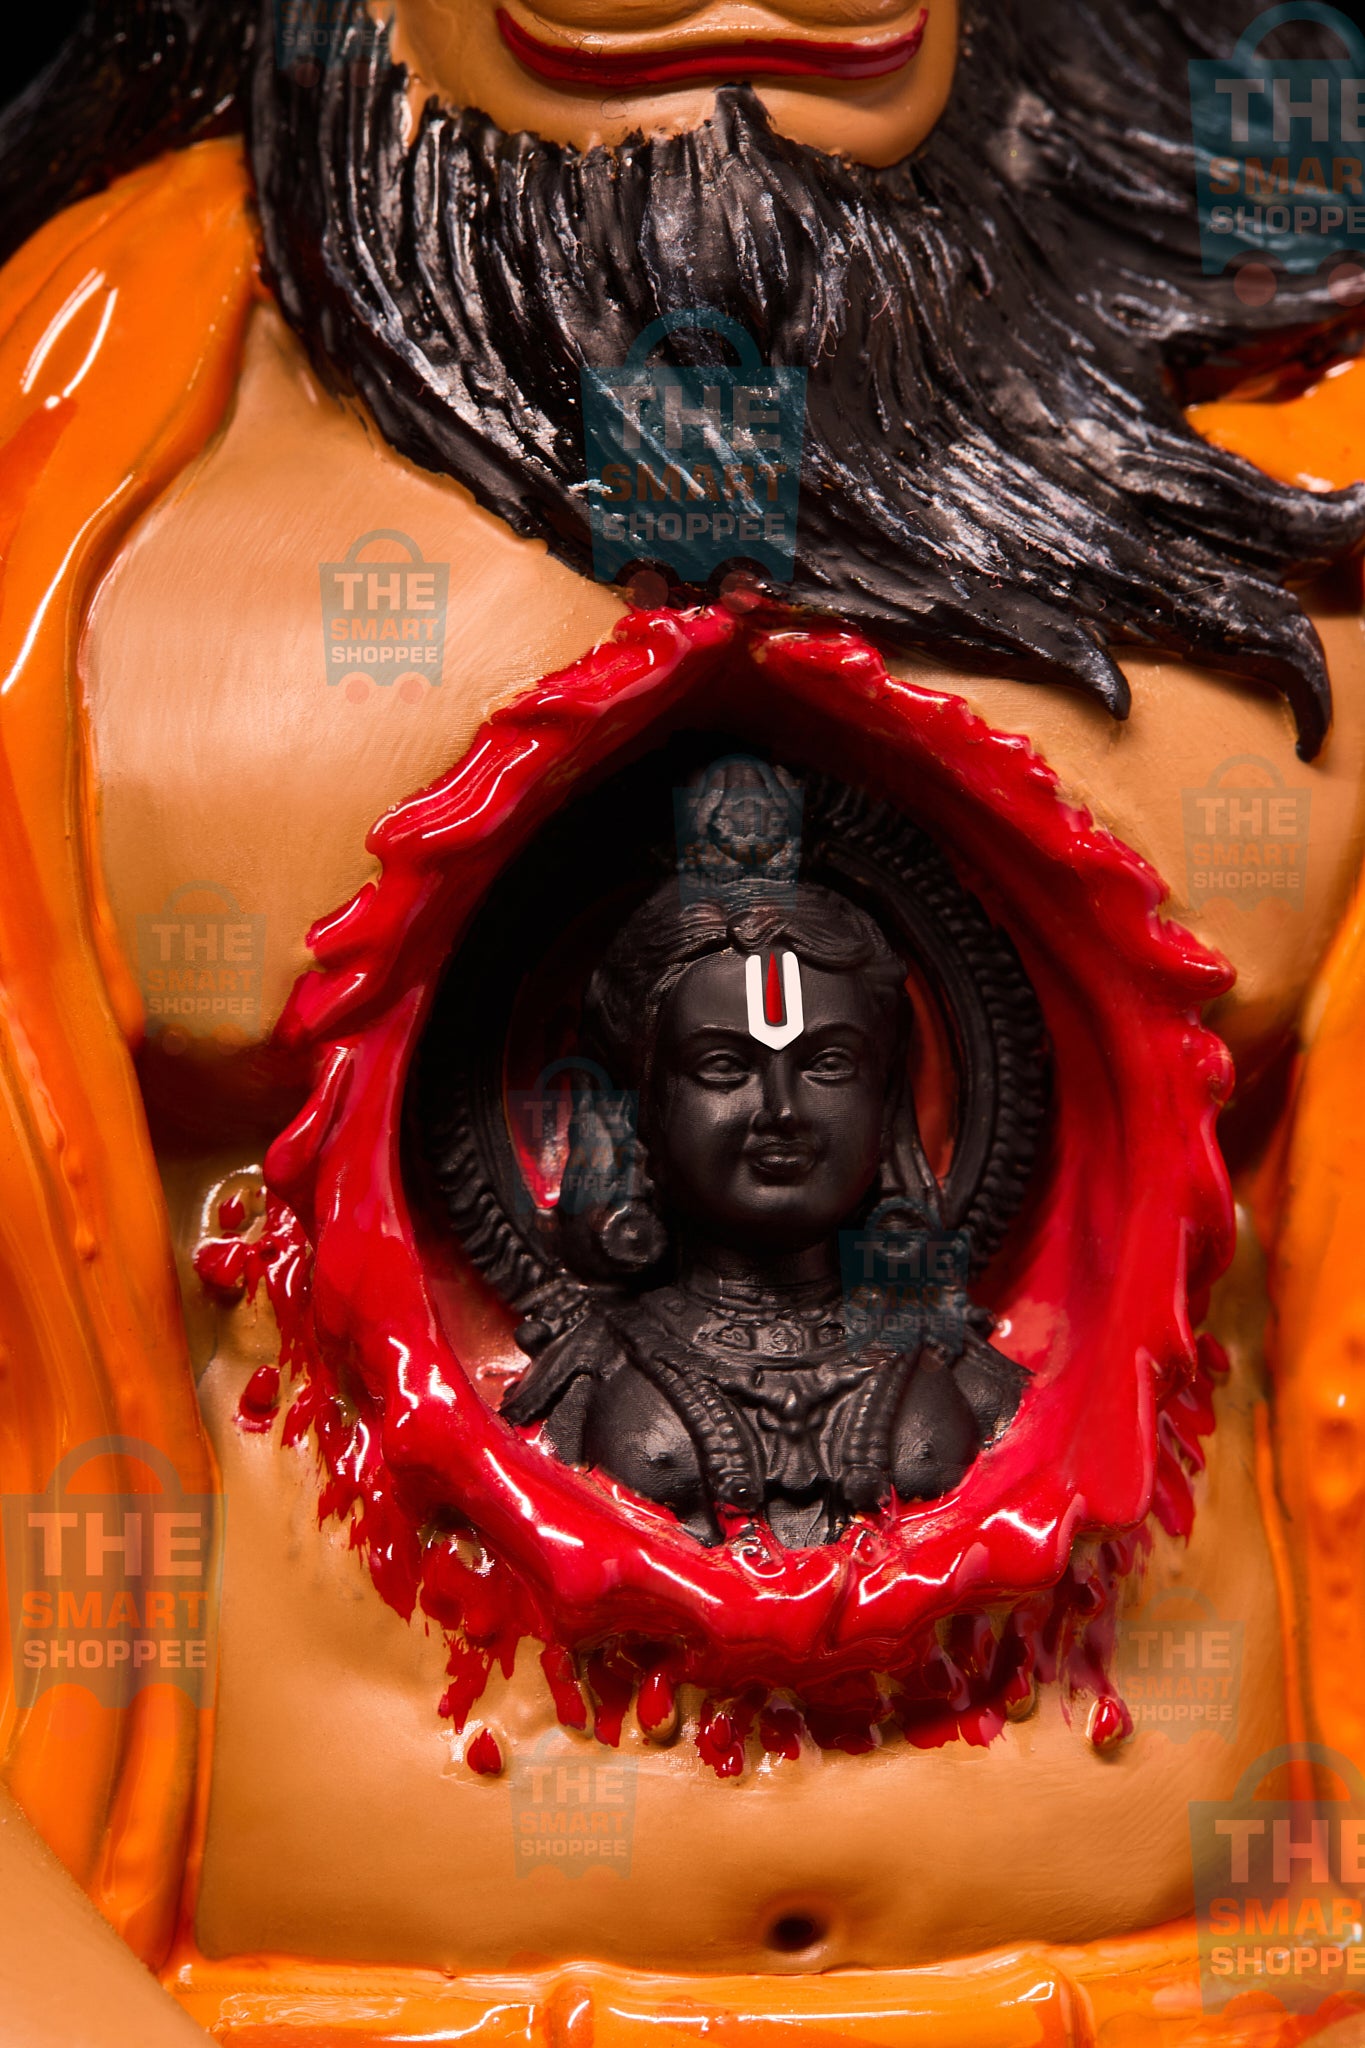 Shri Ram Dootaya Rudra Roopaya Sankat Mochanaya Mahavir Hanuman